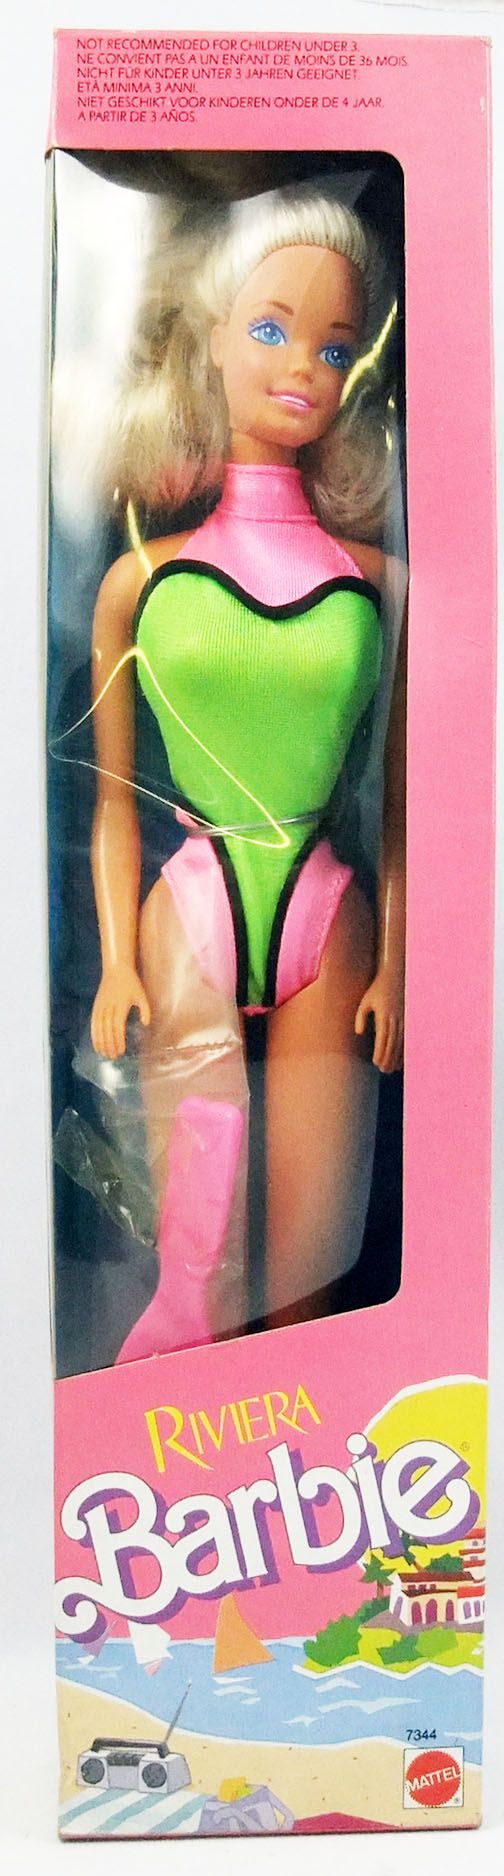 Verwoesten wervelkolom College Barbie - Riviera Barbie - Mattel 1989 (ref.7344)